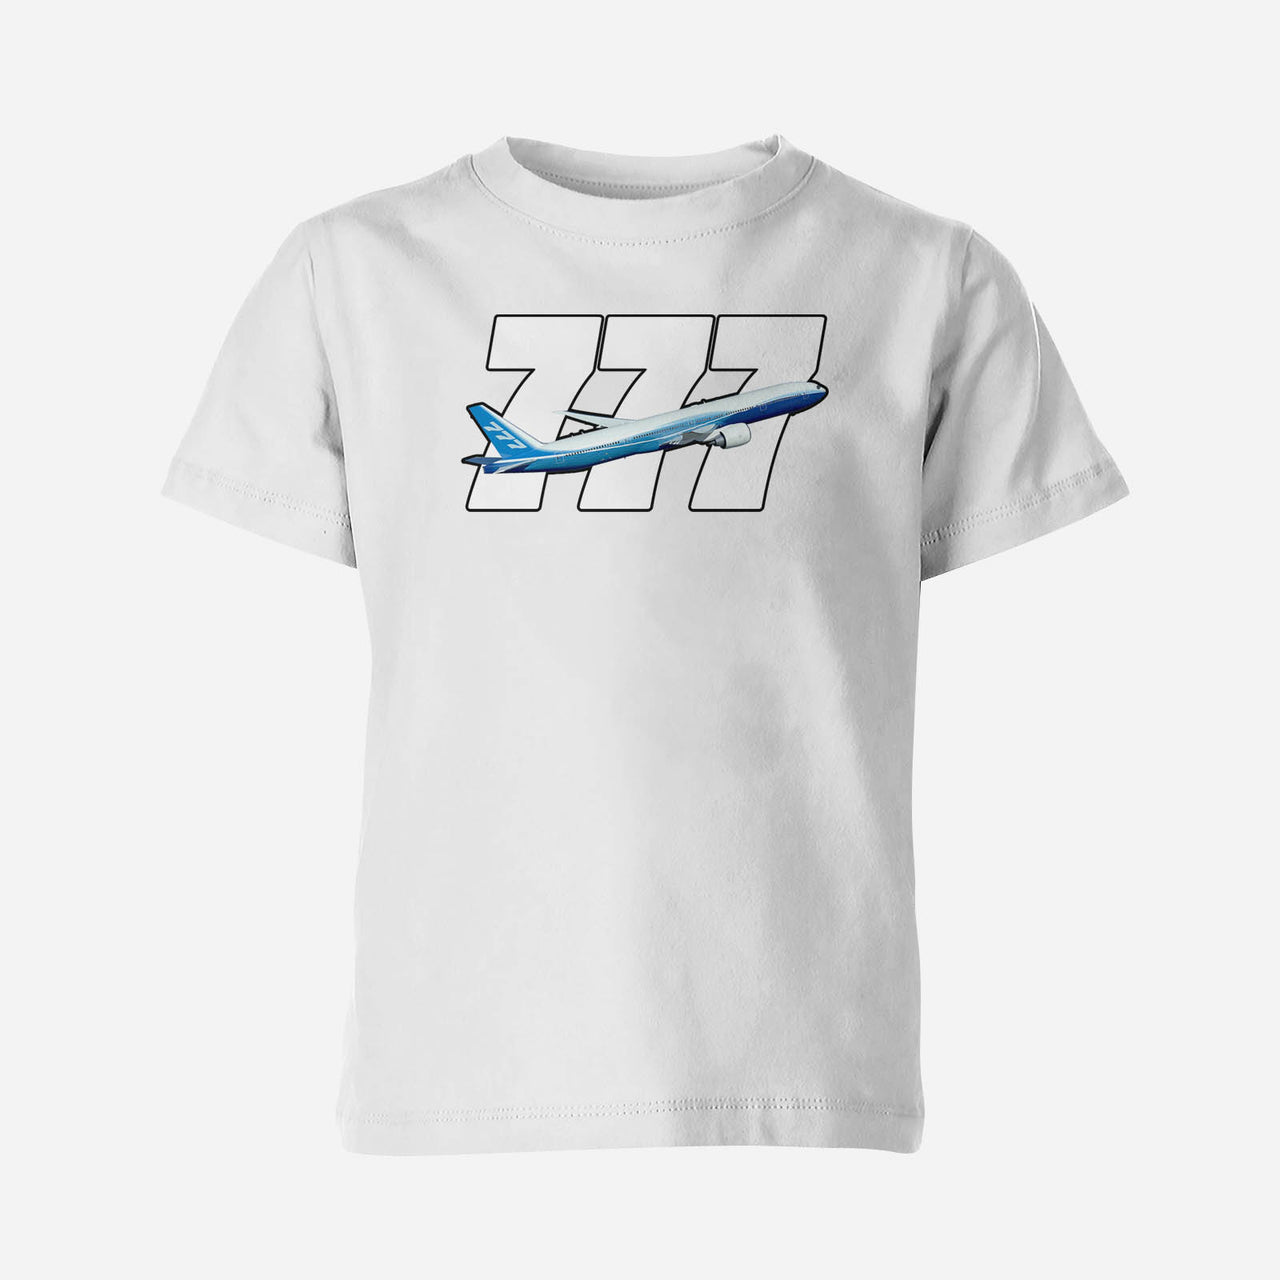 Super Boeing 777 Designed Children T-Shirts